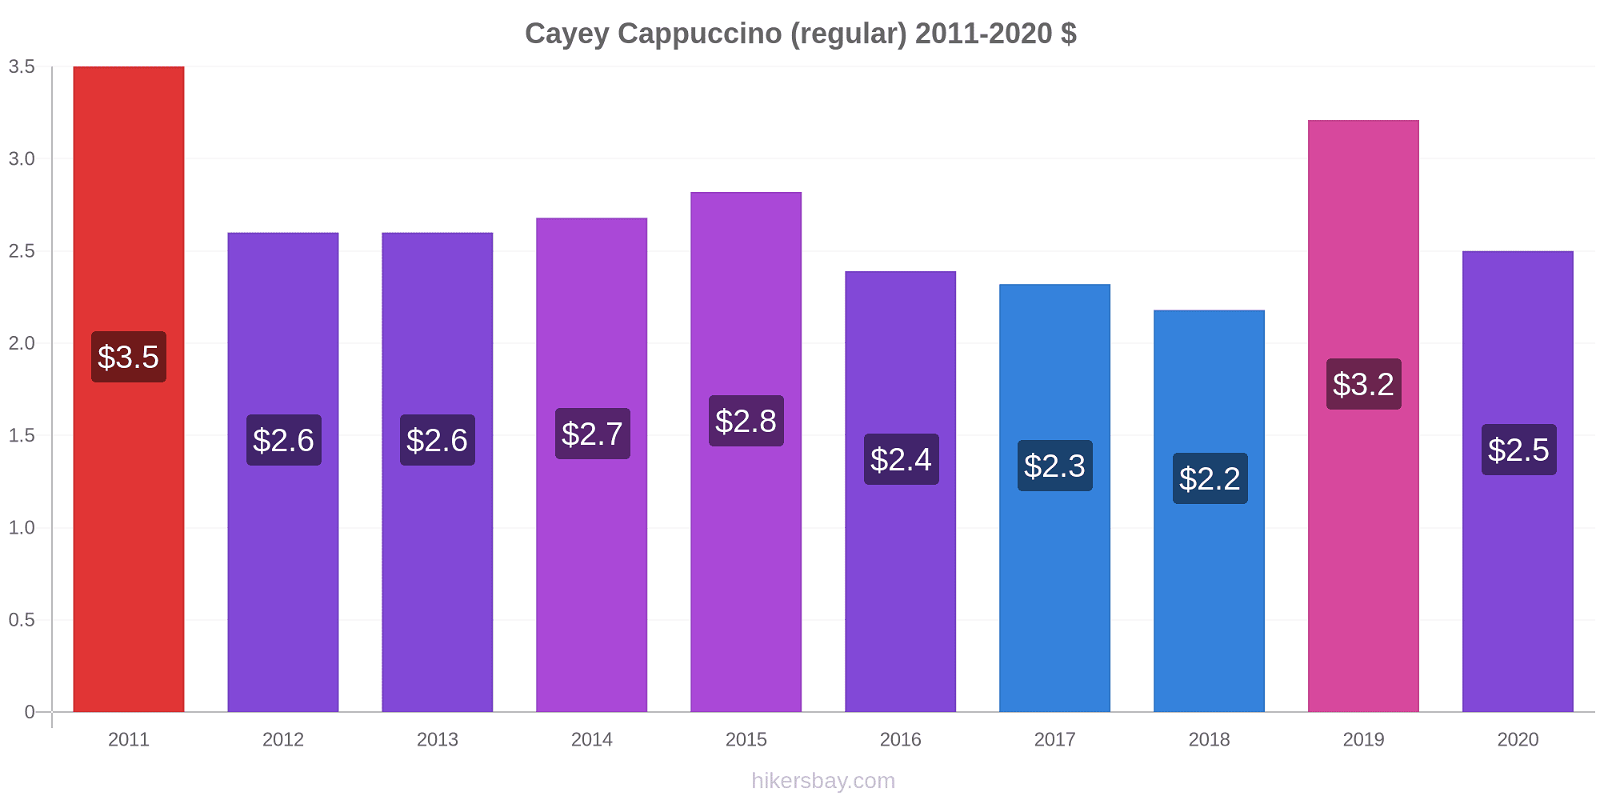 Cayey price changes Cappuccino (regular) hikersbay.com